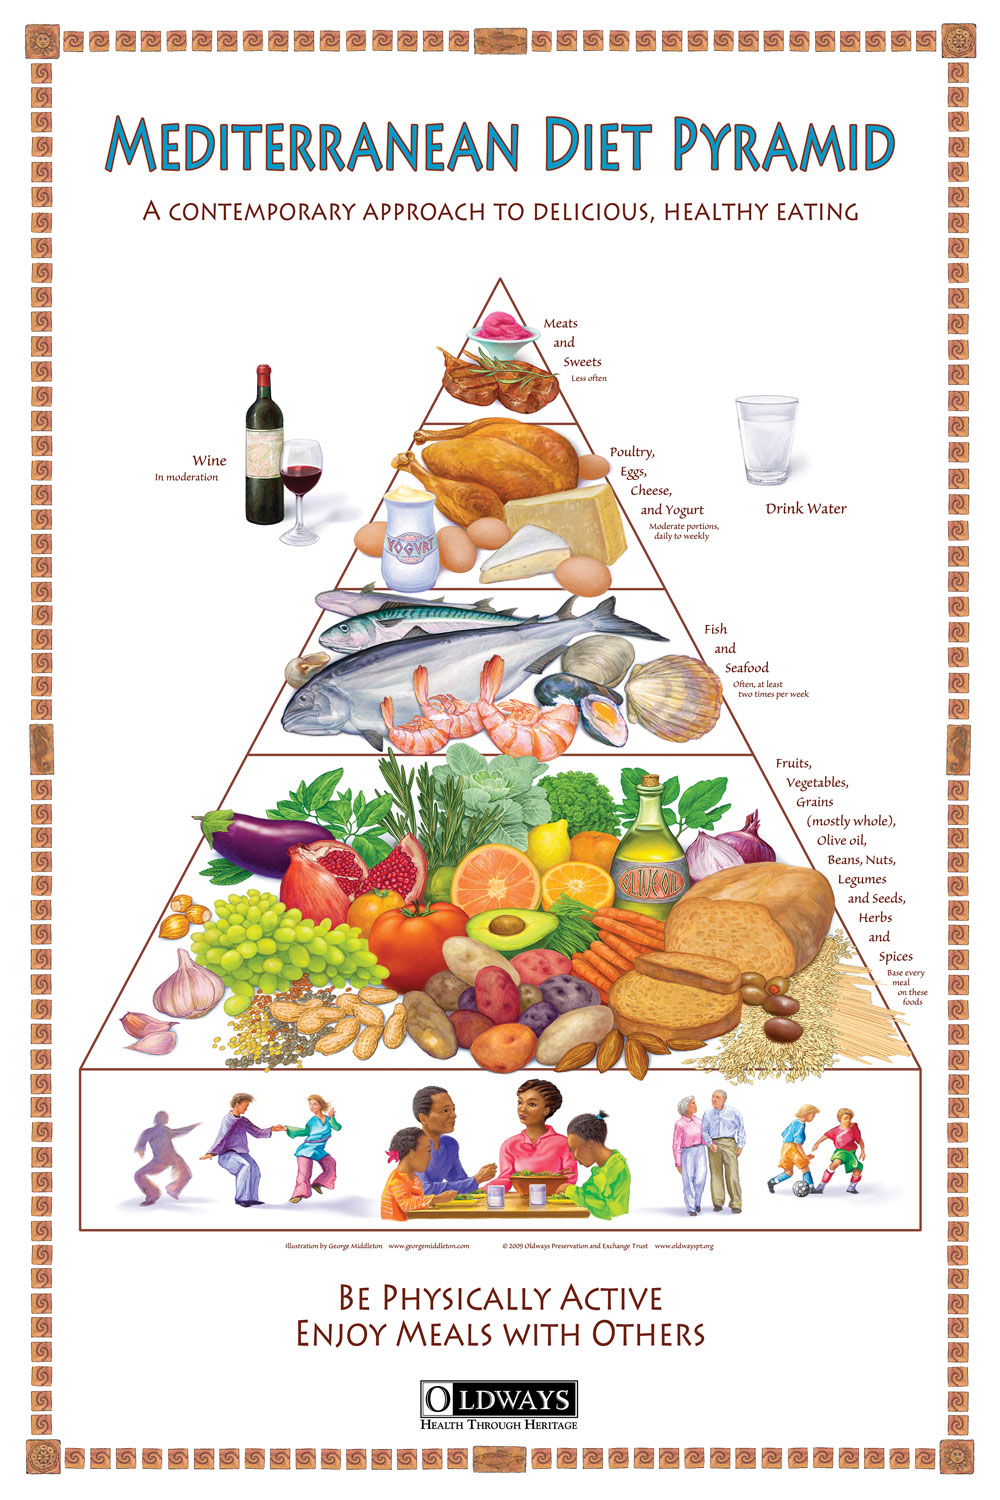 Mediterranean Diet Pyramid Poster | Oldways